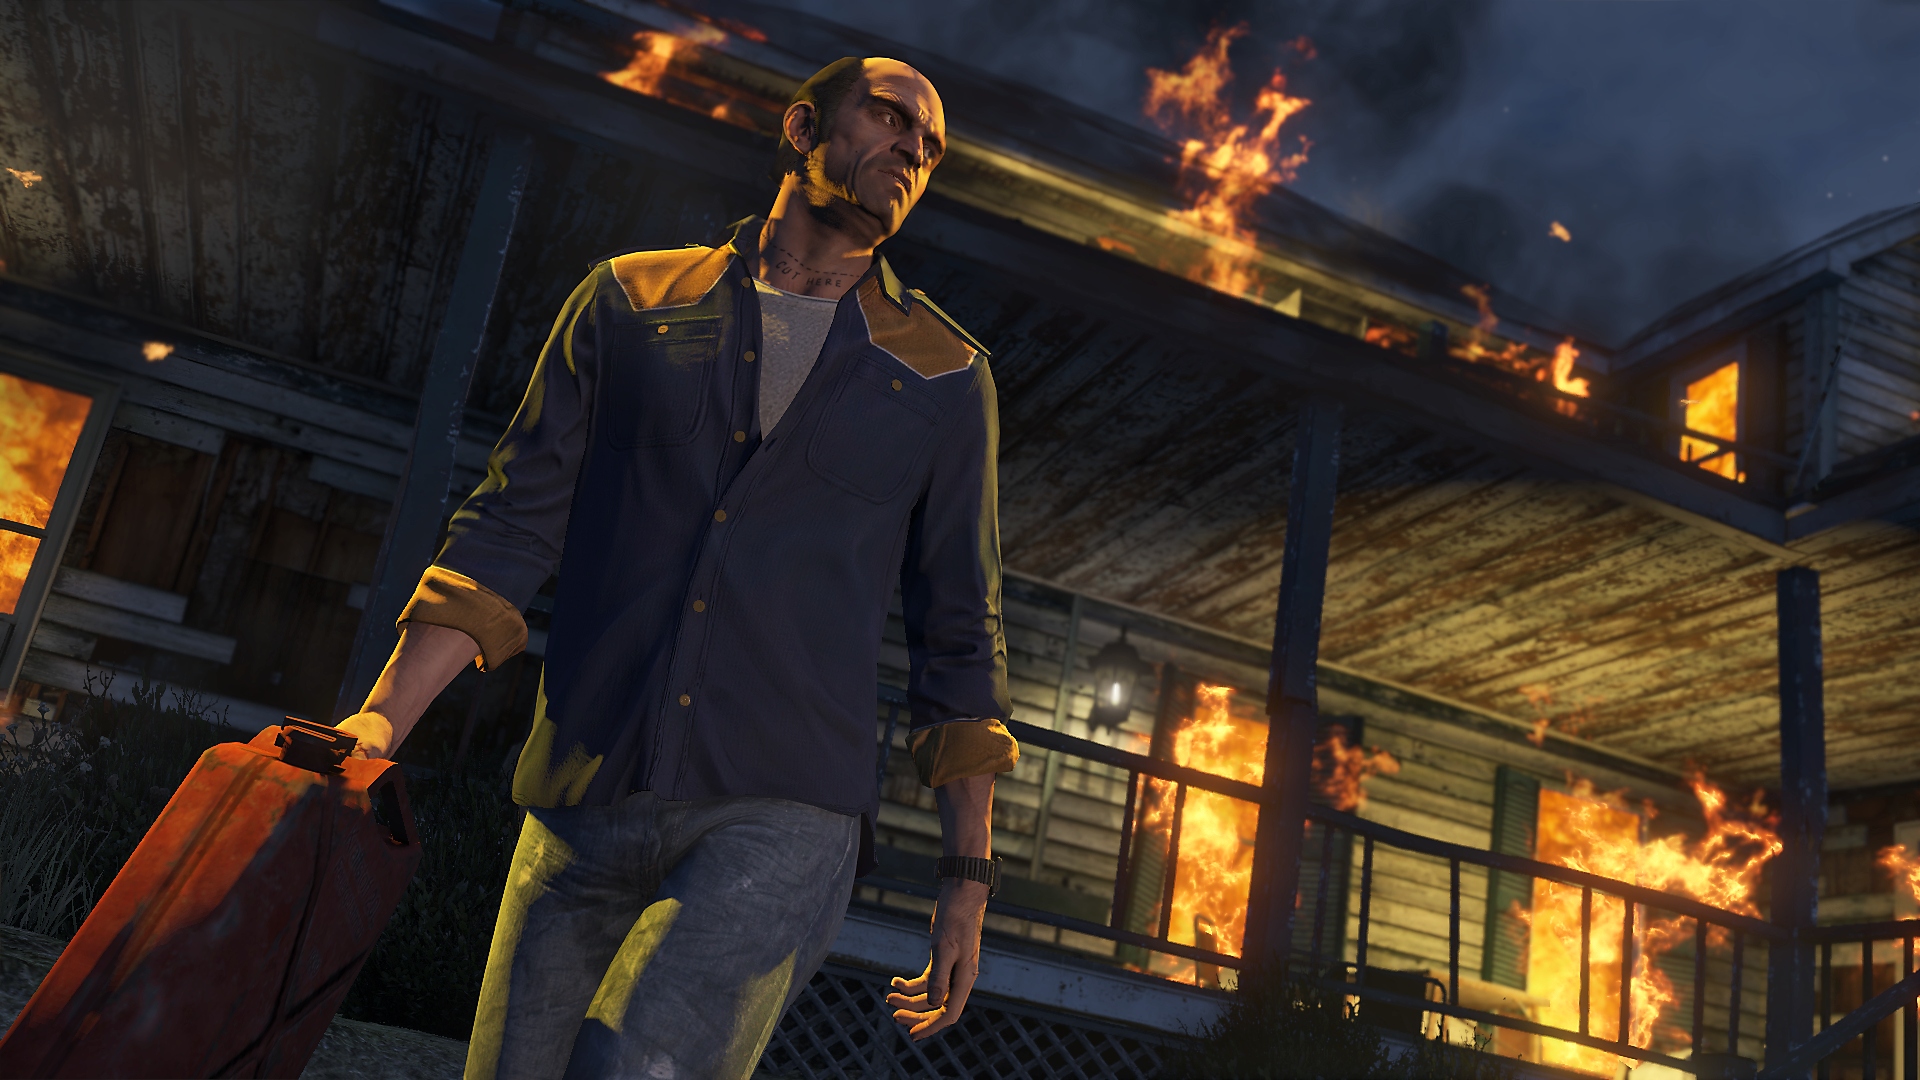 Grand Theft Auto Online - Captura de ecrã que mostra a personagem principal, Trevor, a afastar-se de um edifício em chamas enquanto segura um bidão de gasolina